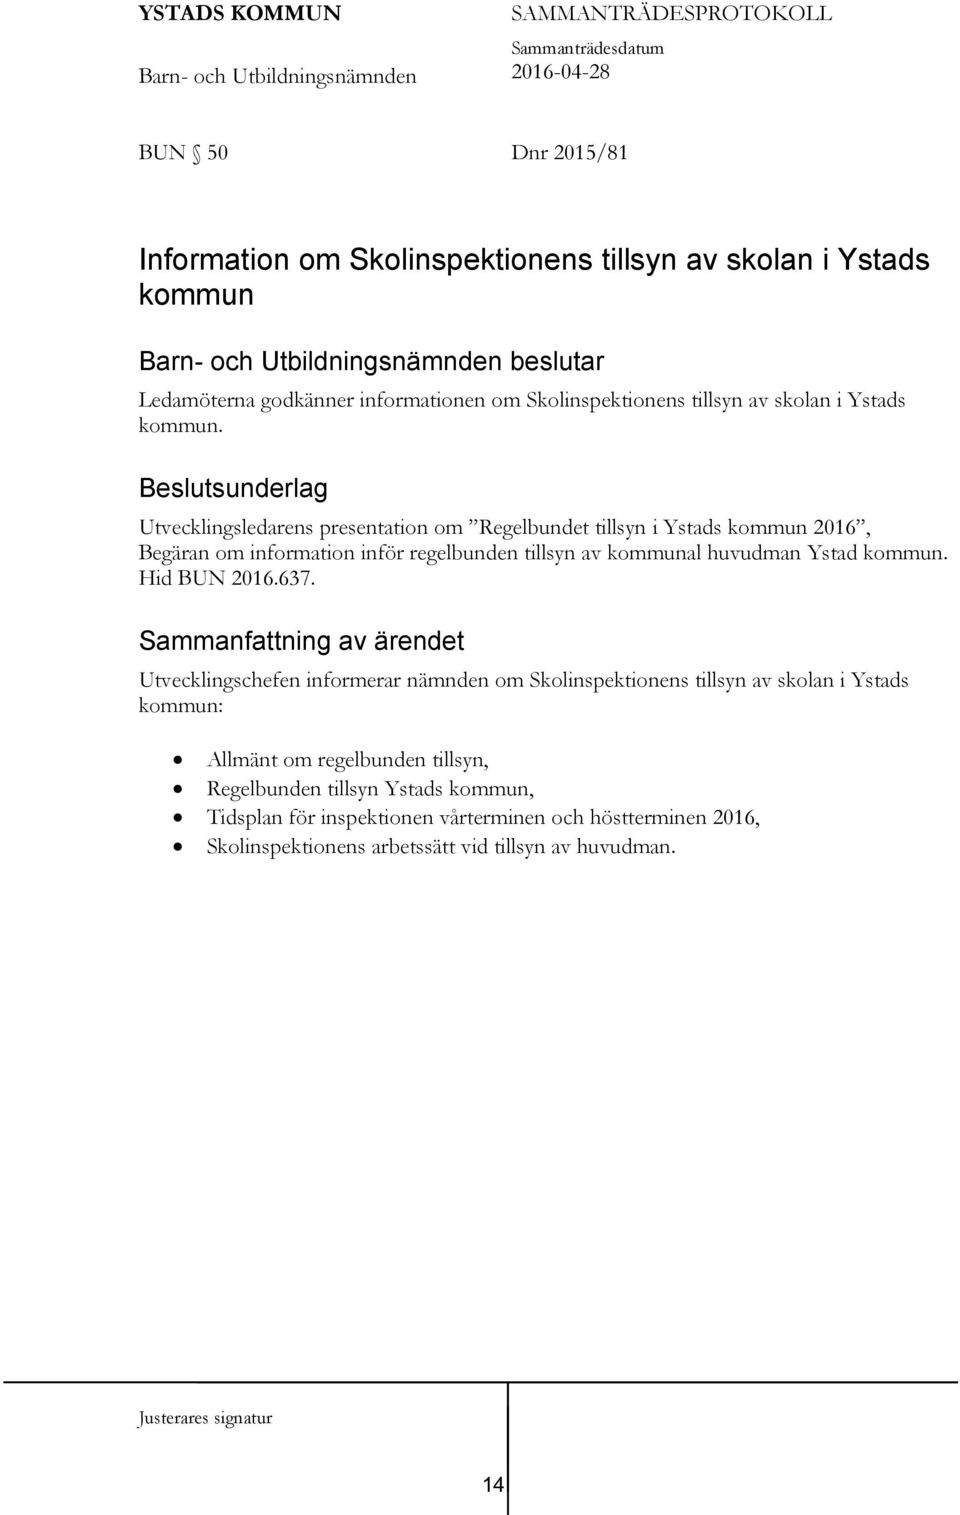 Beslutsunderlag Utvecklingsledarens presentation om Regelbundet tillsyn i Ystads kommun 2016, Begäran om information inför regelbunden tillsyn av kommunal huvudman Ystad